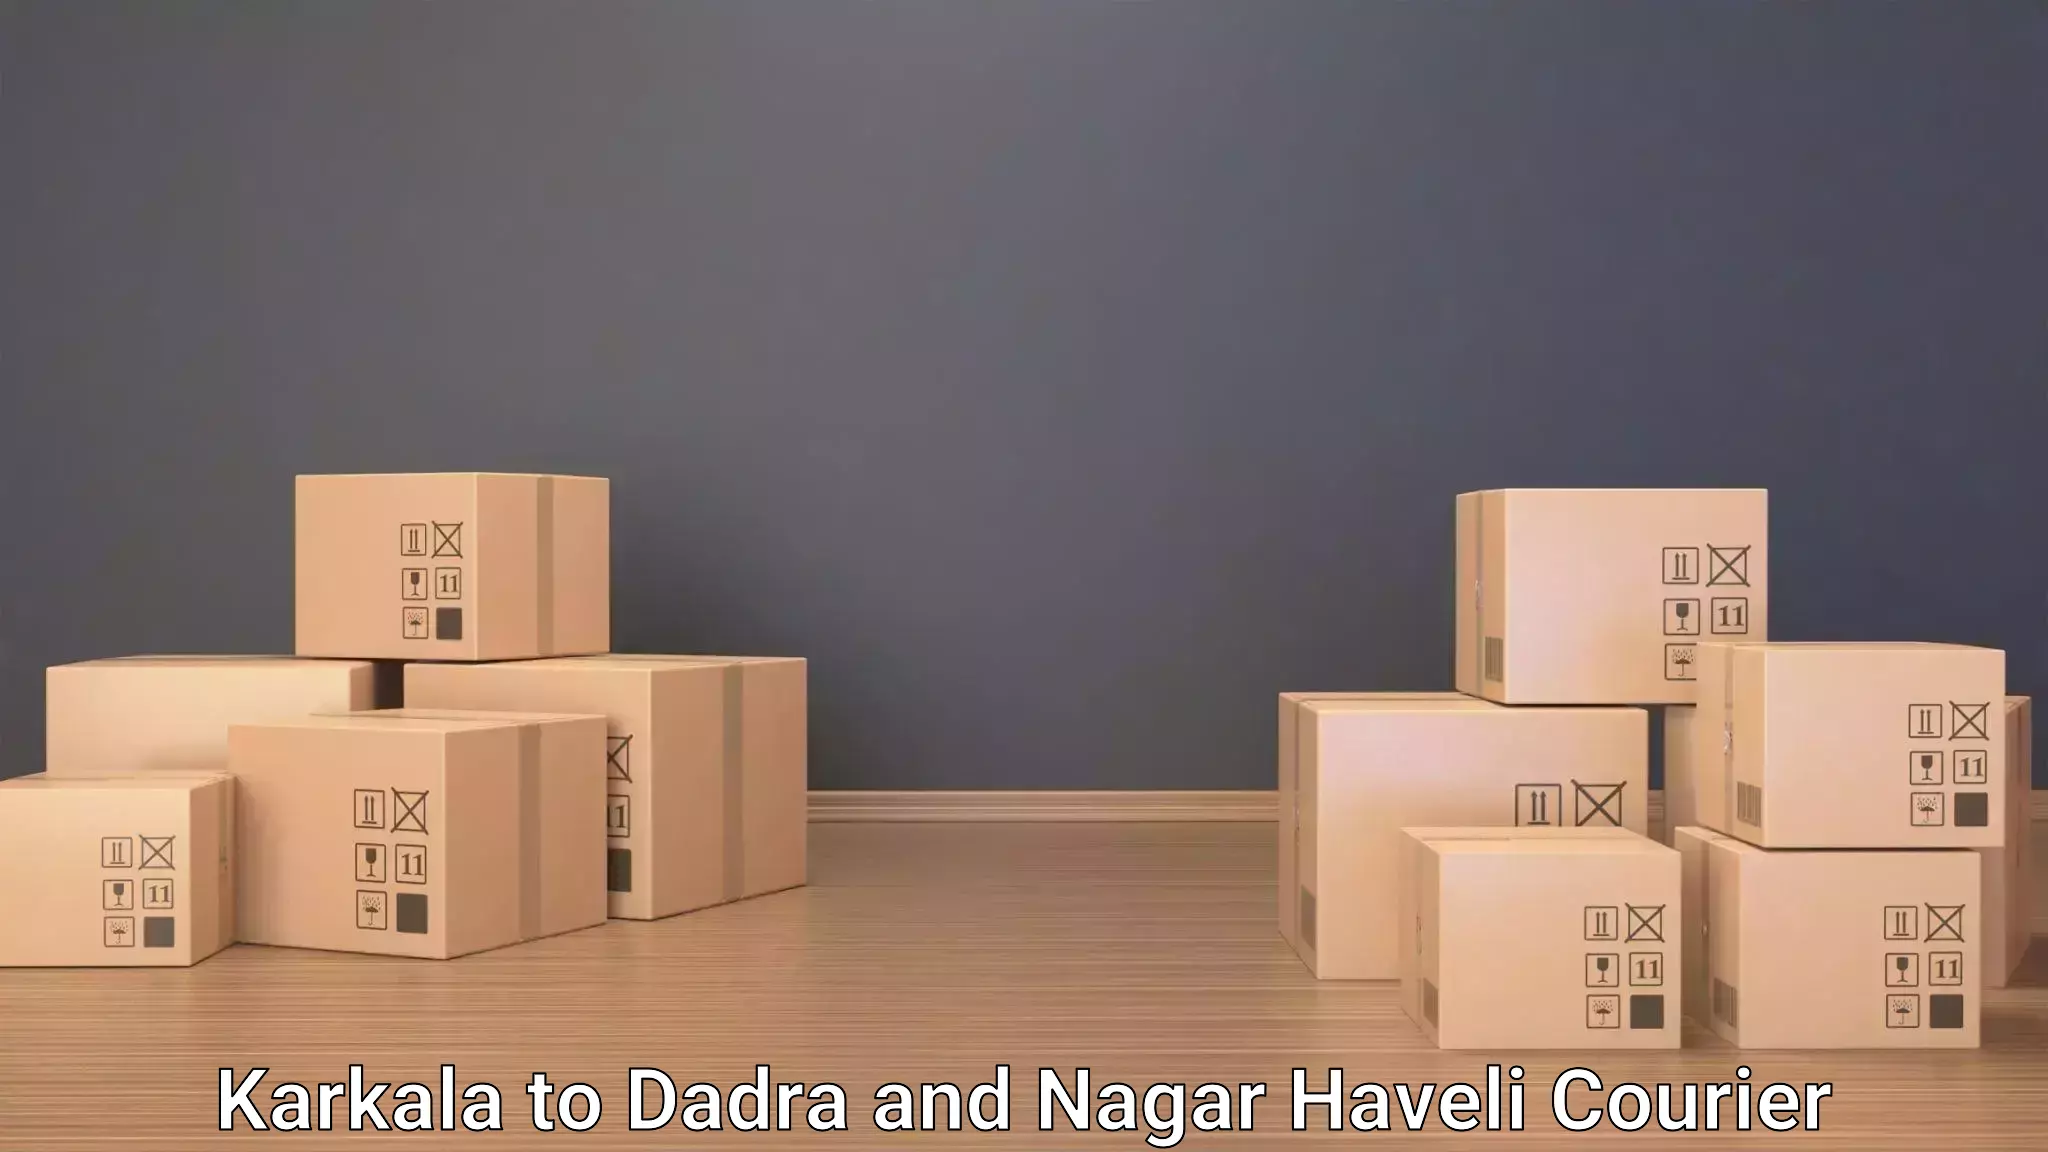 Digital baggage courier Karkala to Dadra and Nagar Haveli